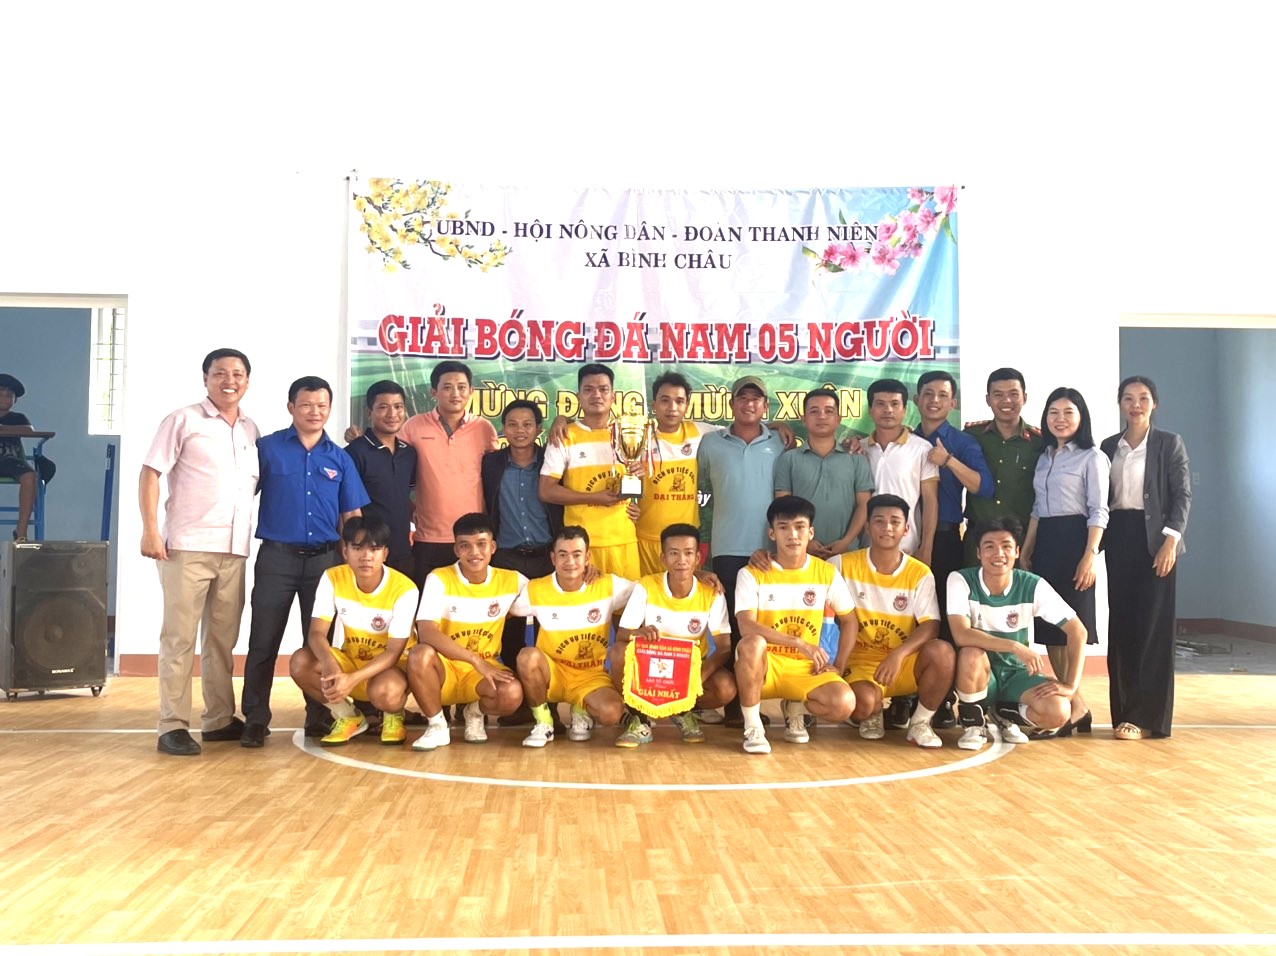 Ủy ban nhân dân xã Bình Châu tổ chức giải Bóng đá sân Nam 05 người mừng Đảng, mừng Xuân Giáp Thìn năm 2024.